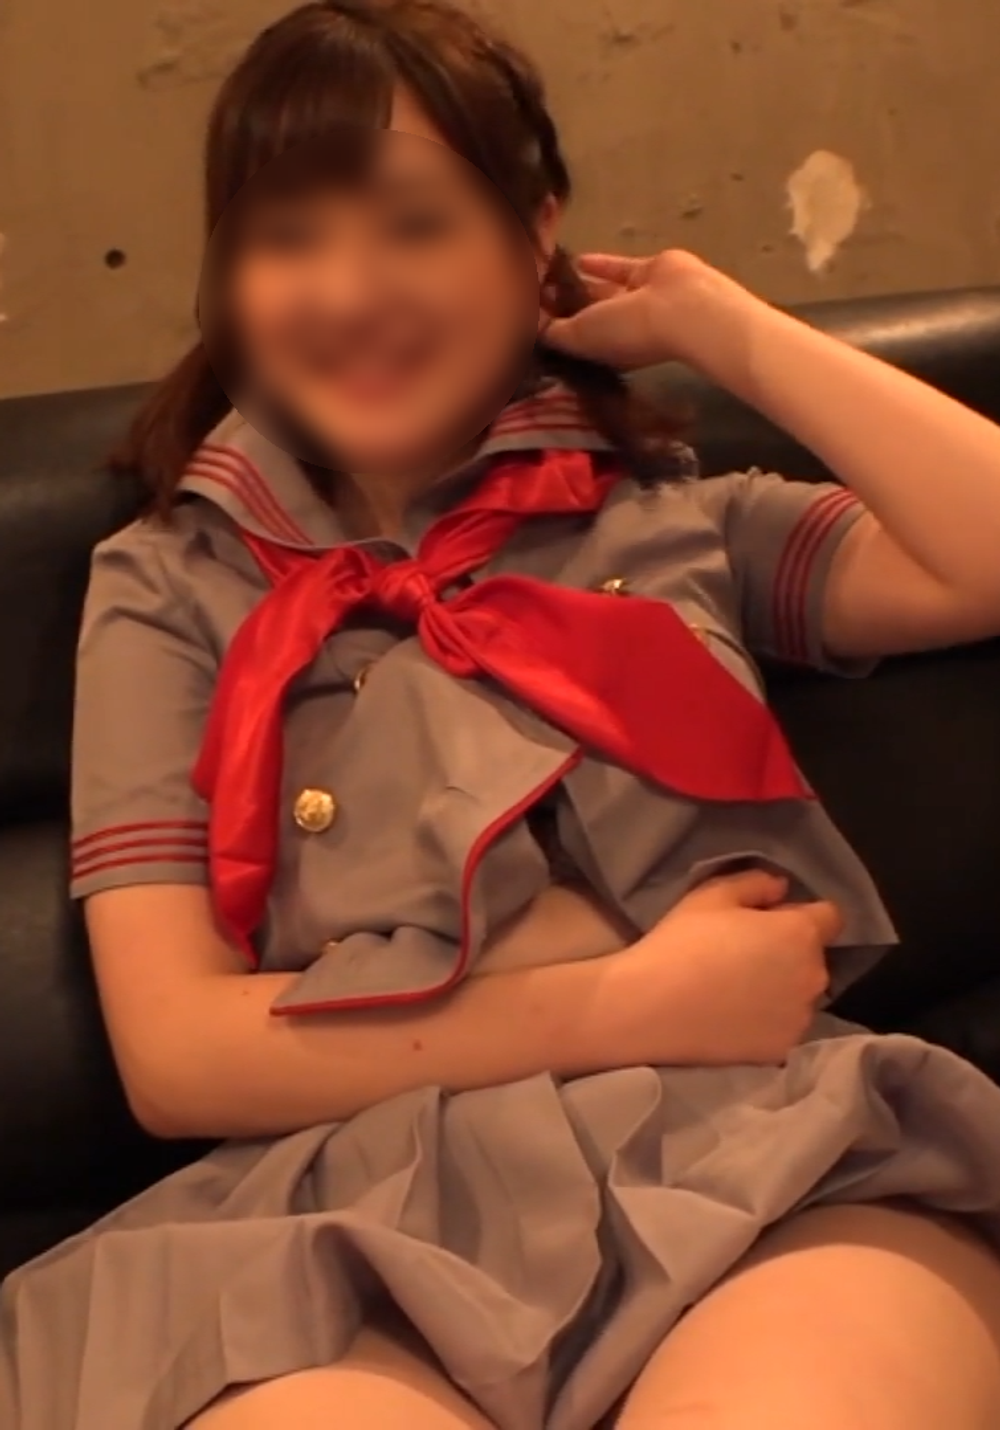 【個人撮影】私立のお嬢様学校に通うJ〇に顔射。イキながら笑顔で喜ぶドスケベ美少女【素人】